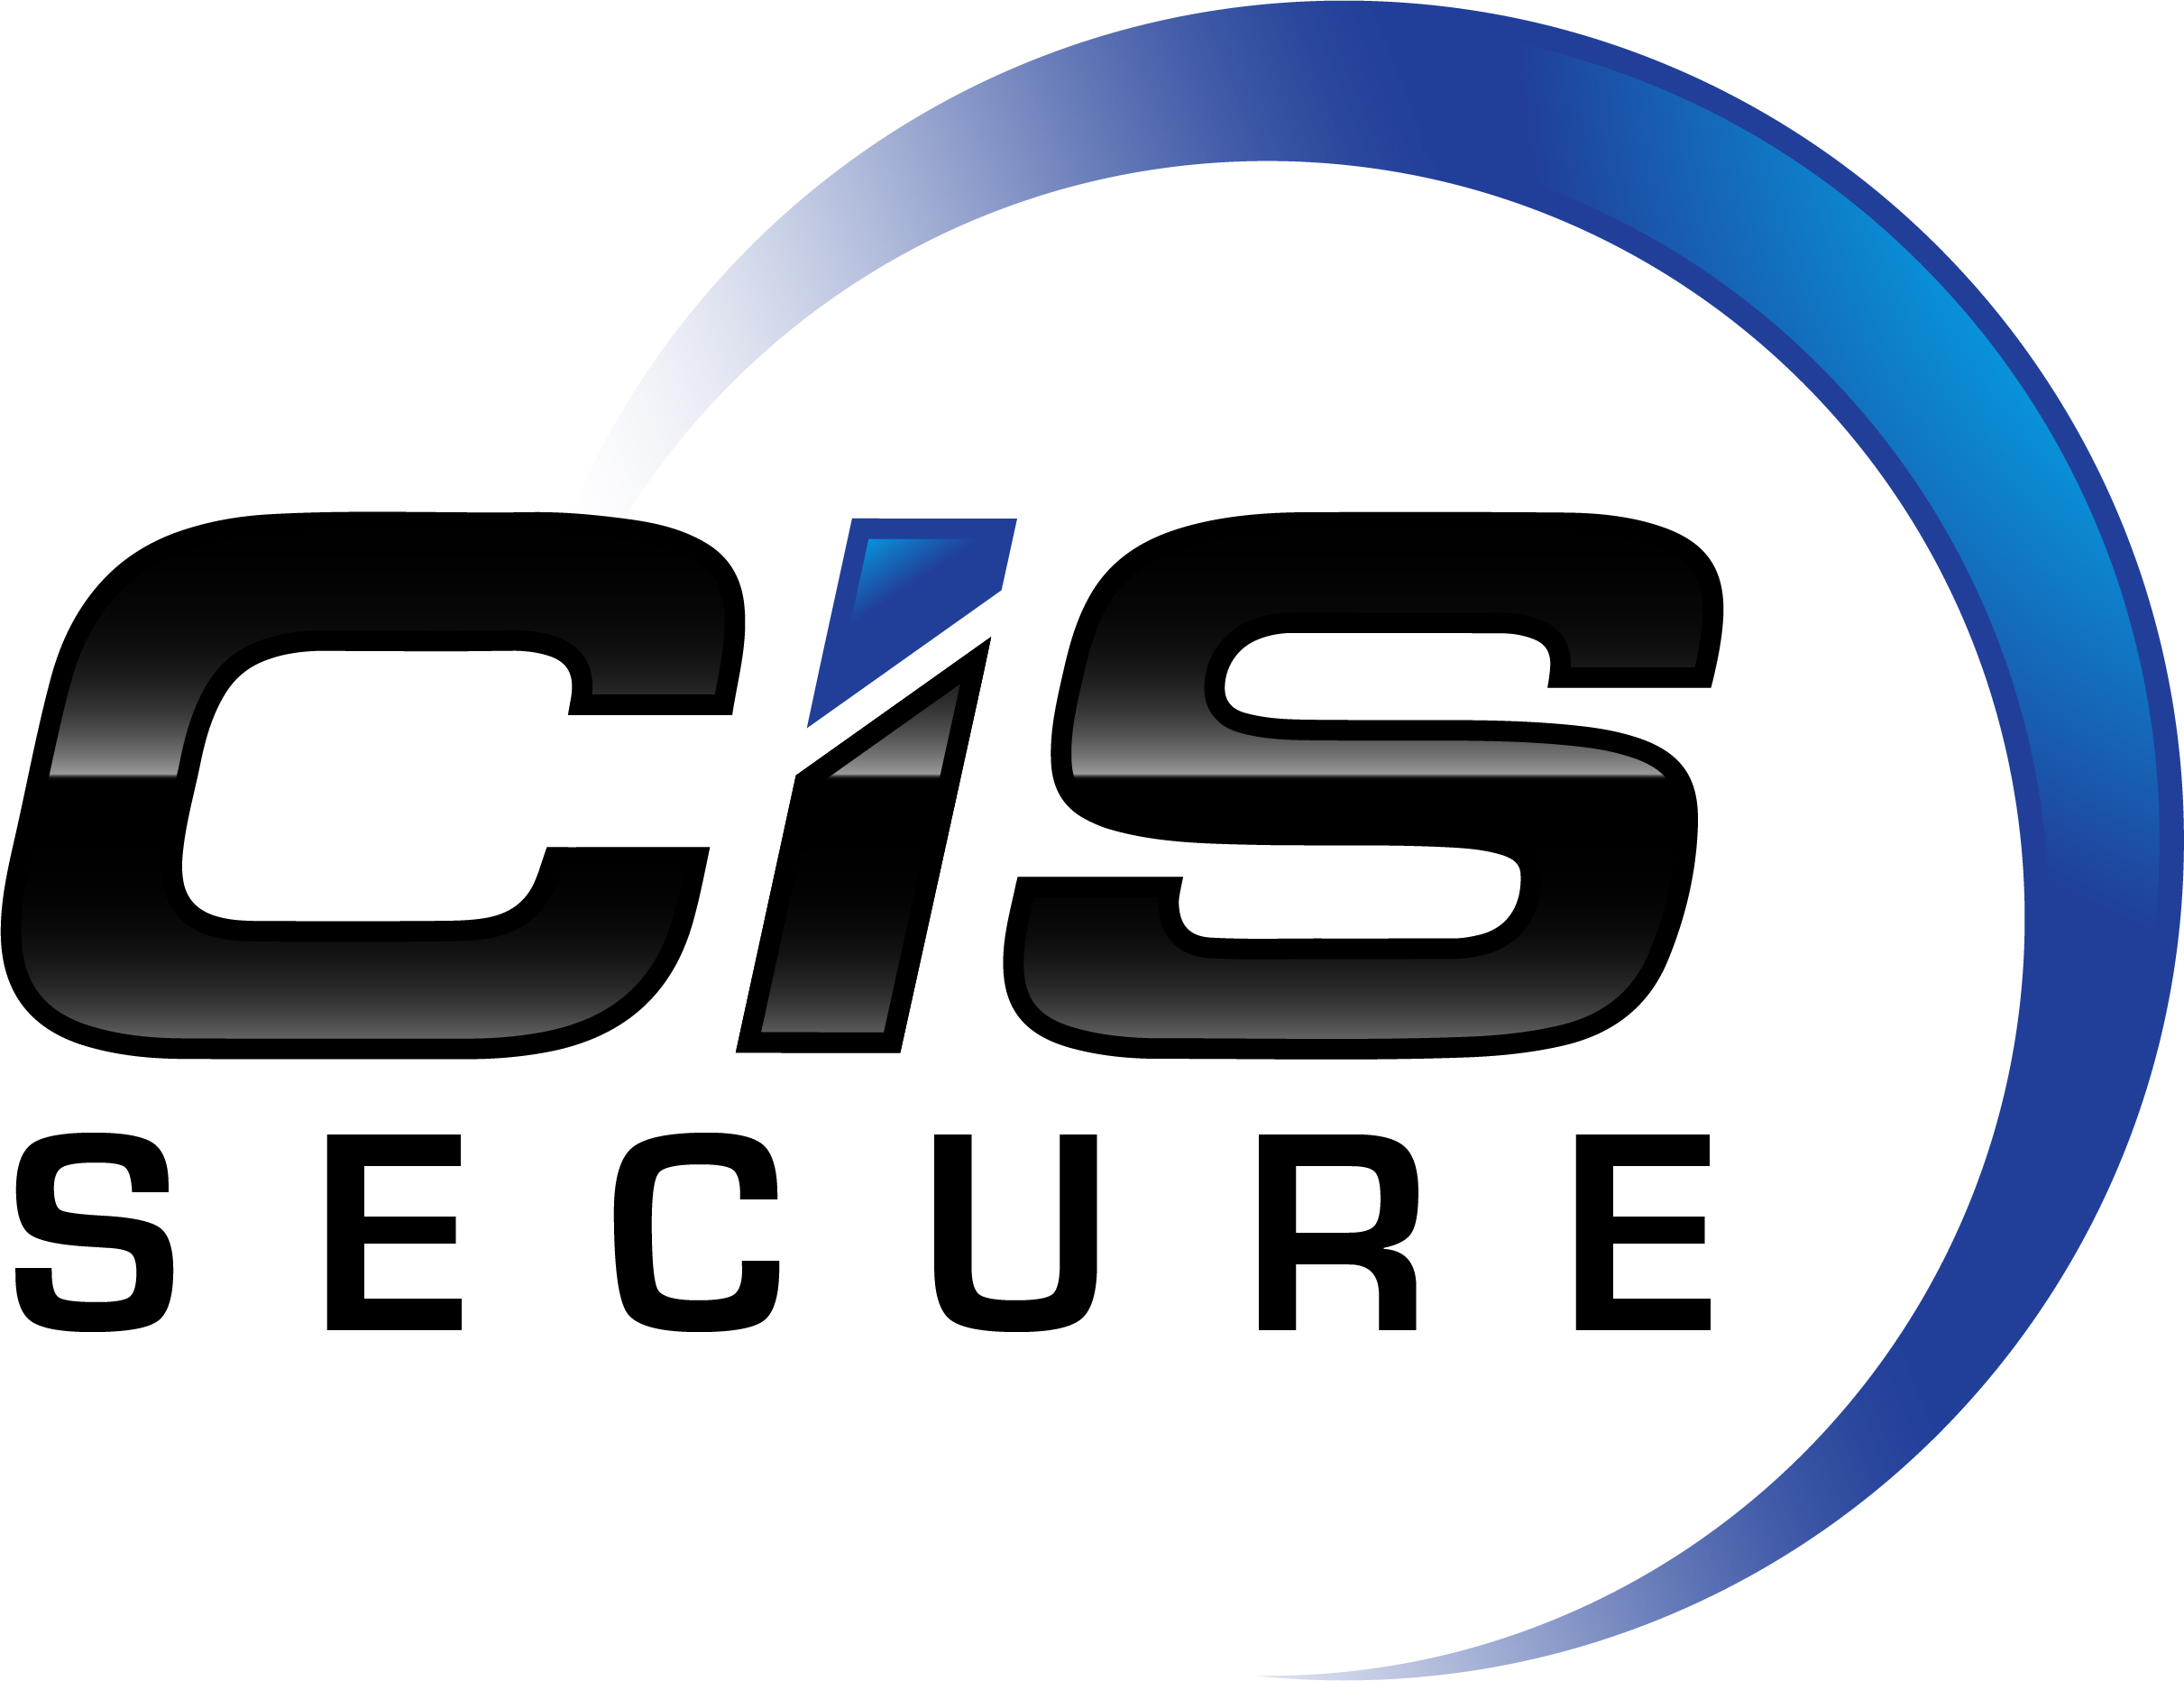 CIS Secure Company Logo